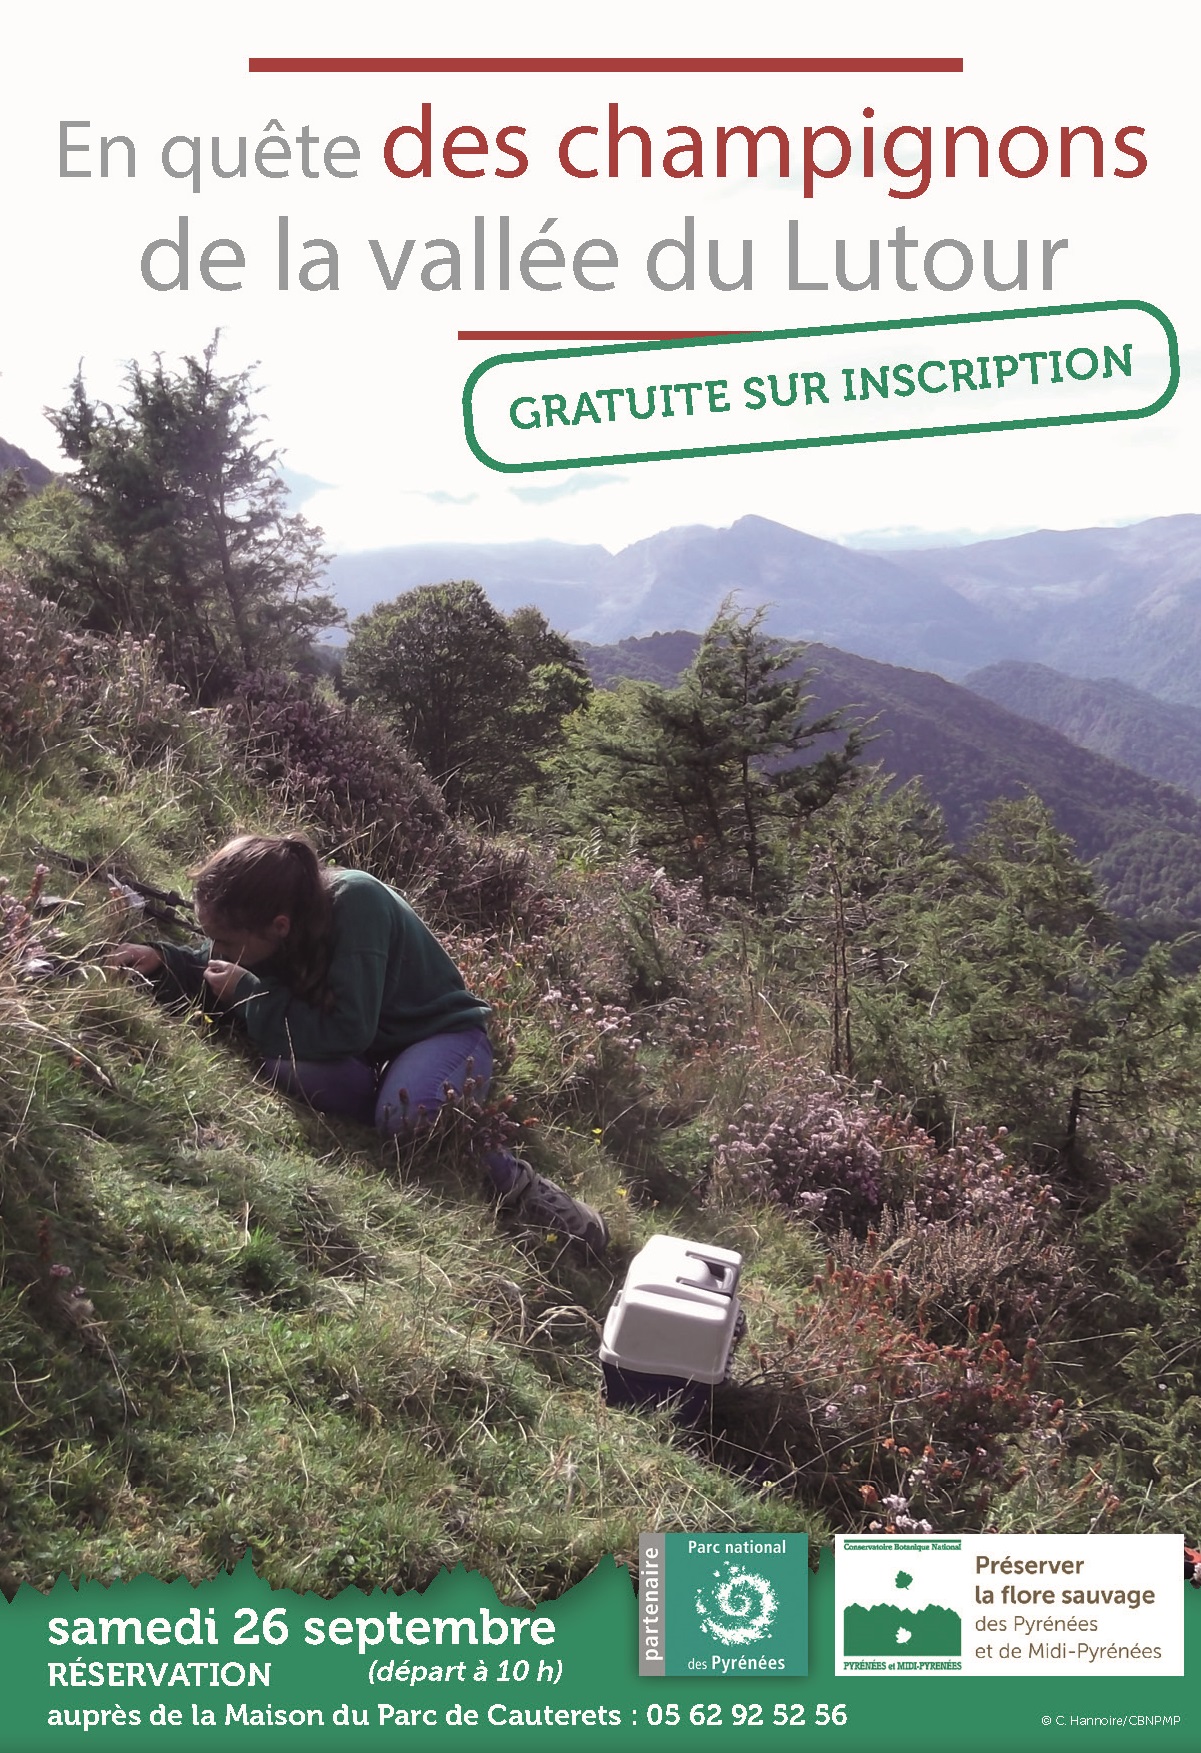 En quête des champignons de la vallée du Lutour © Conservatoire Botanique Pyrénées et Midi-Pyrénées